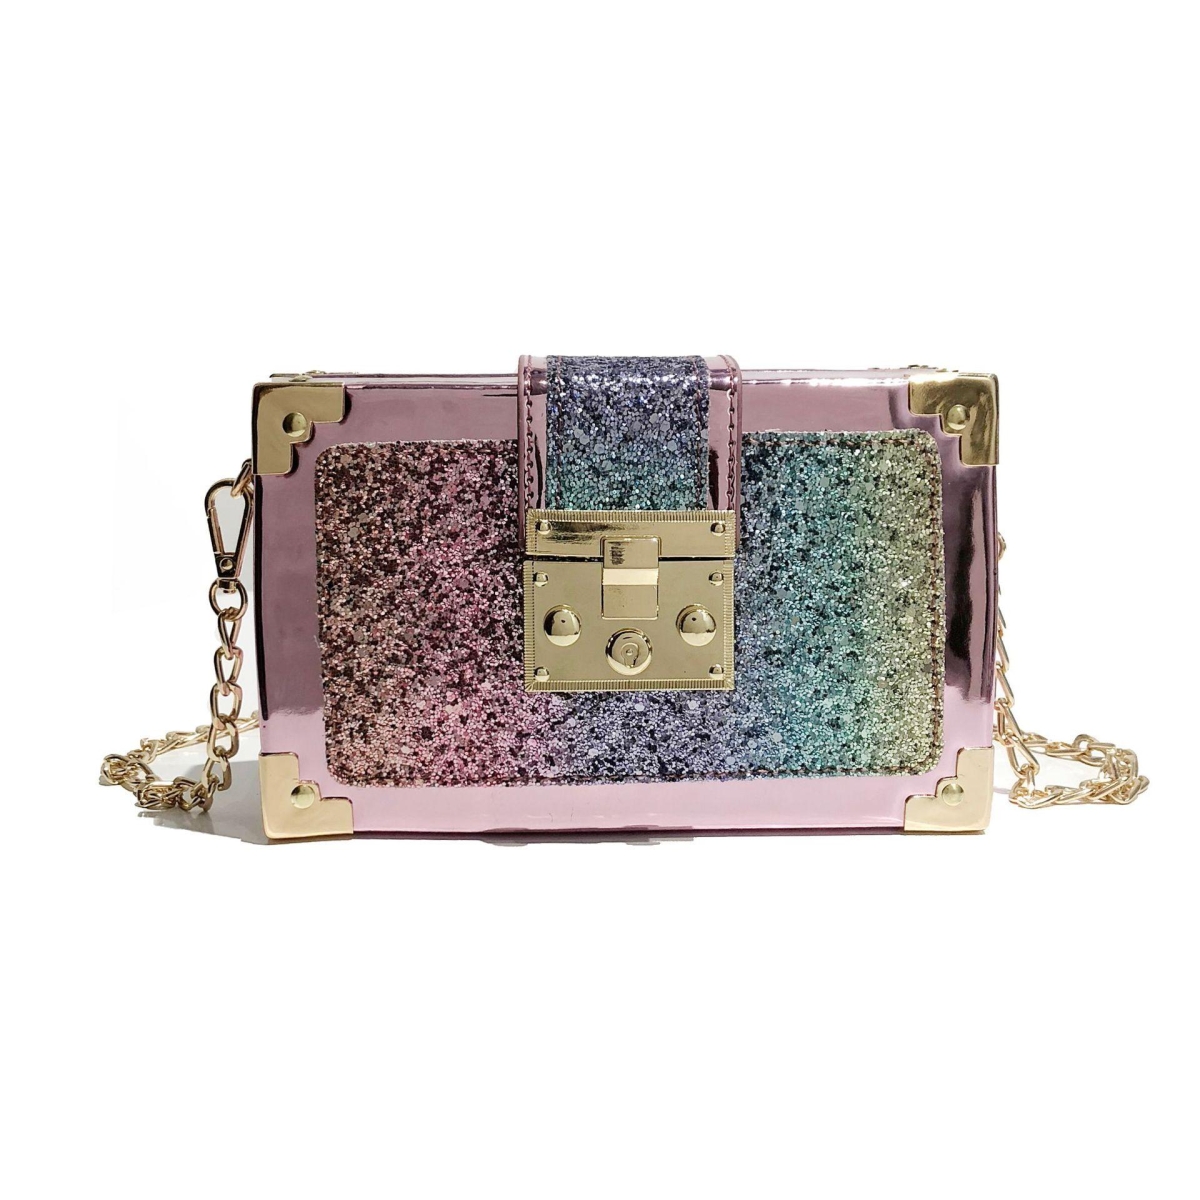 GB Multi-Color Glitter Crossbody Handbag - Multi